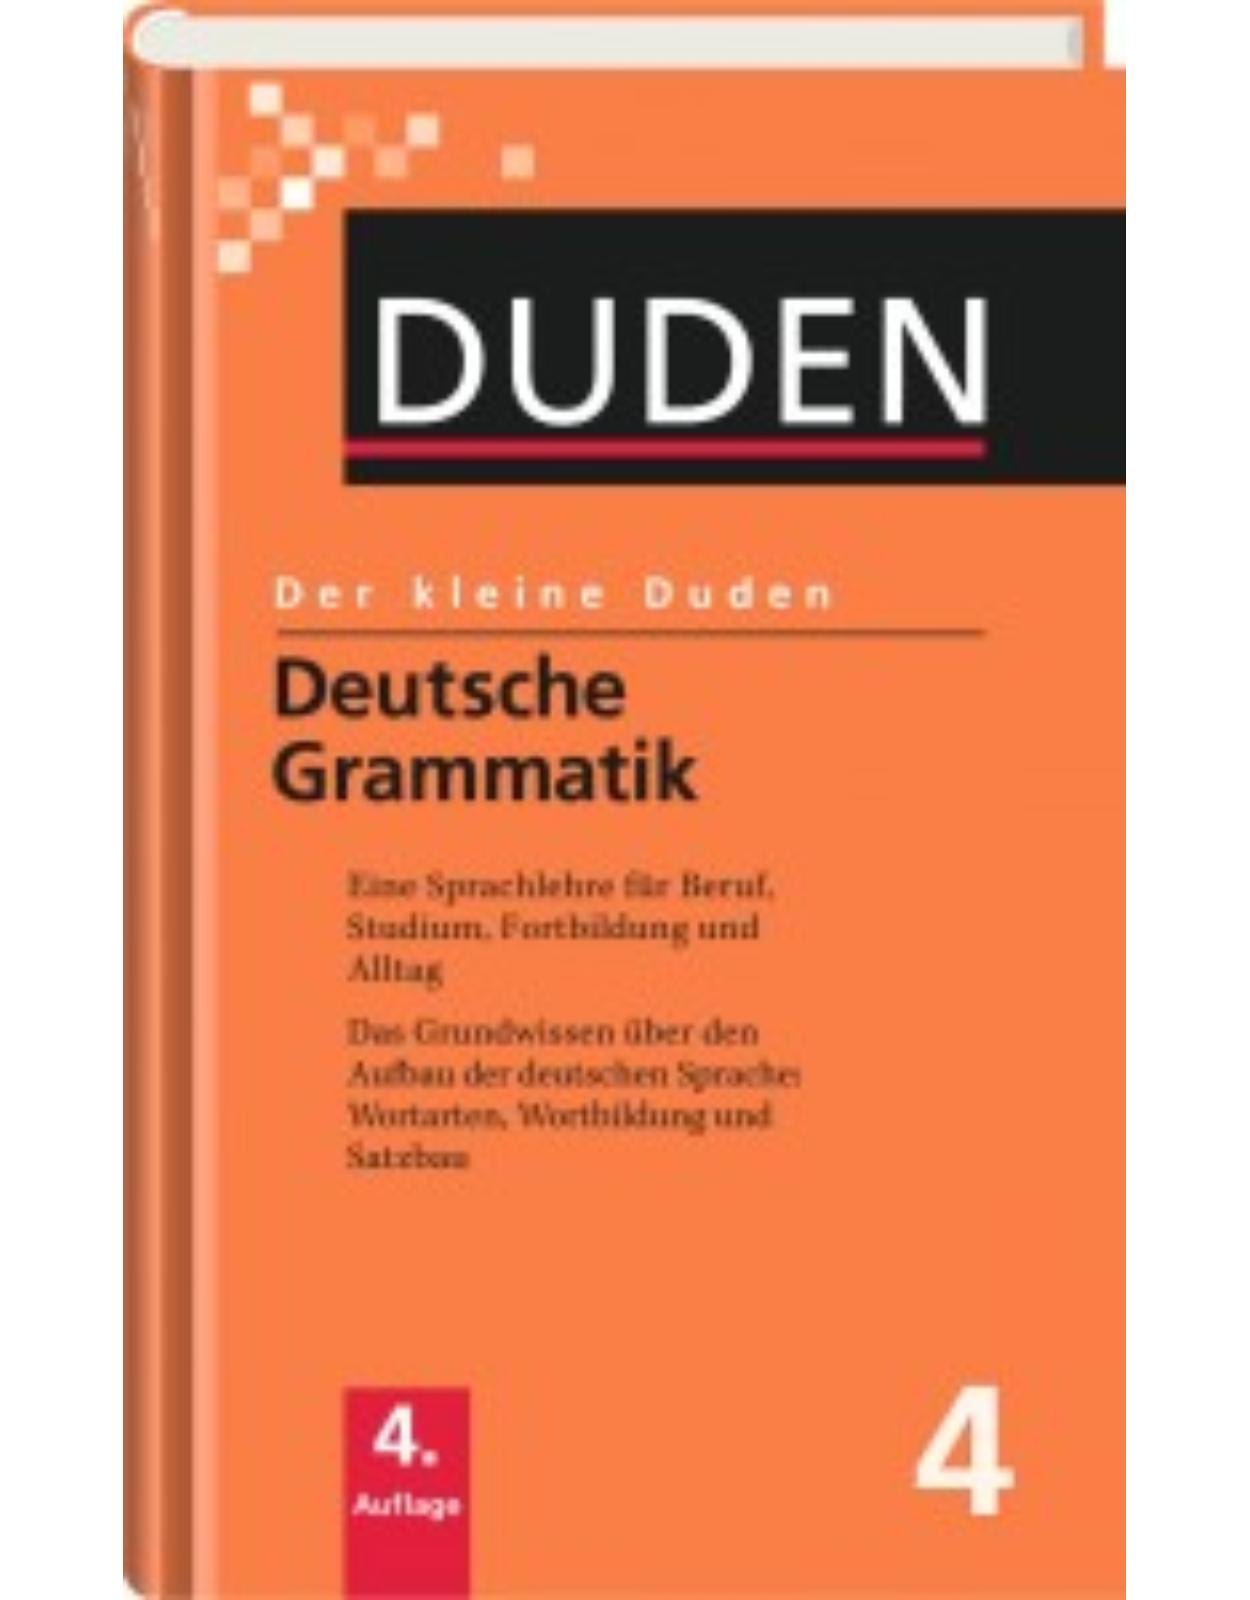 Der kleine Duden - Band 4 : Deutsche Grammatik